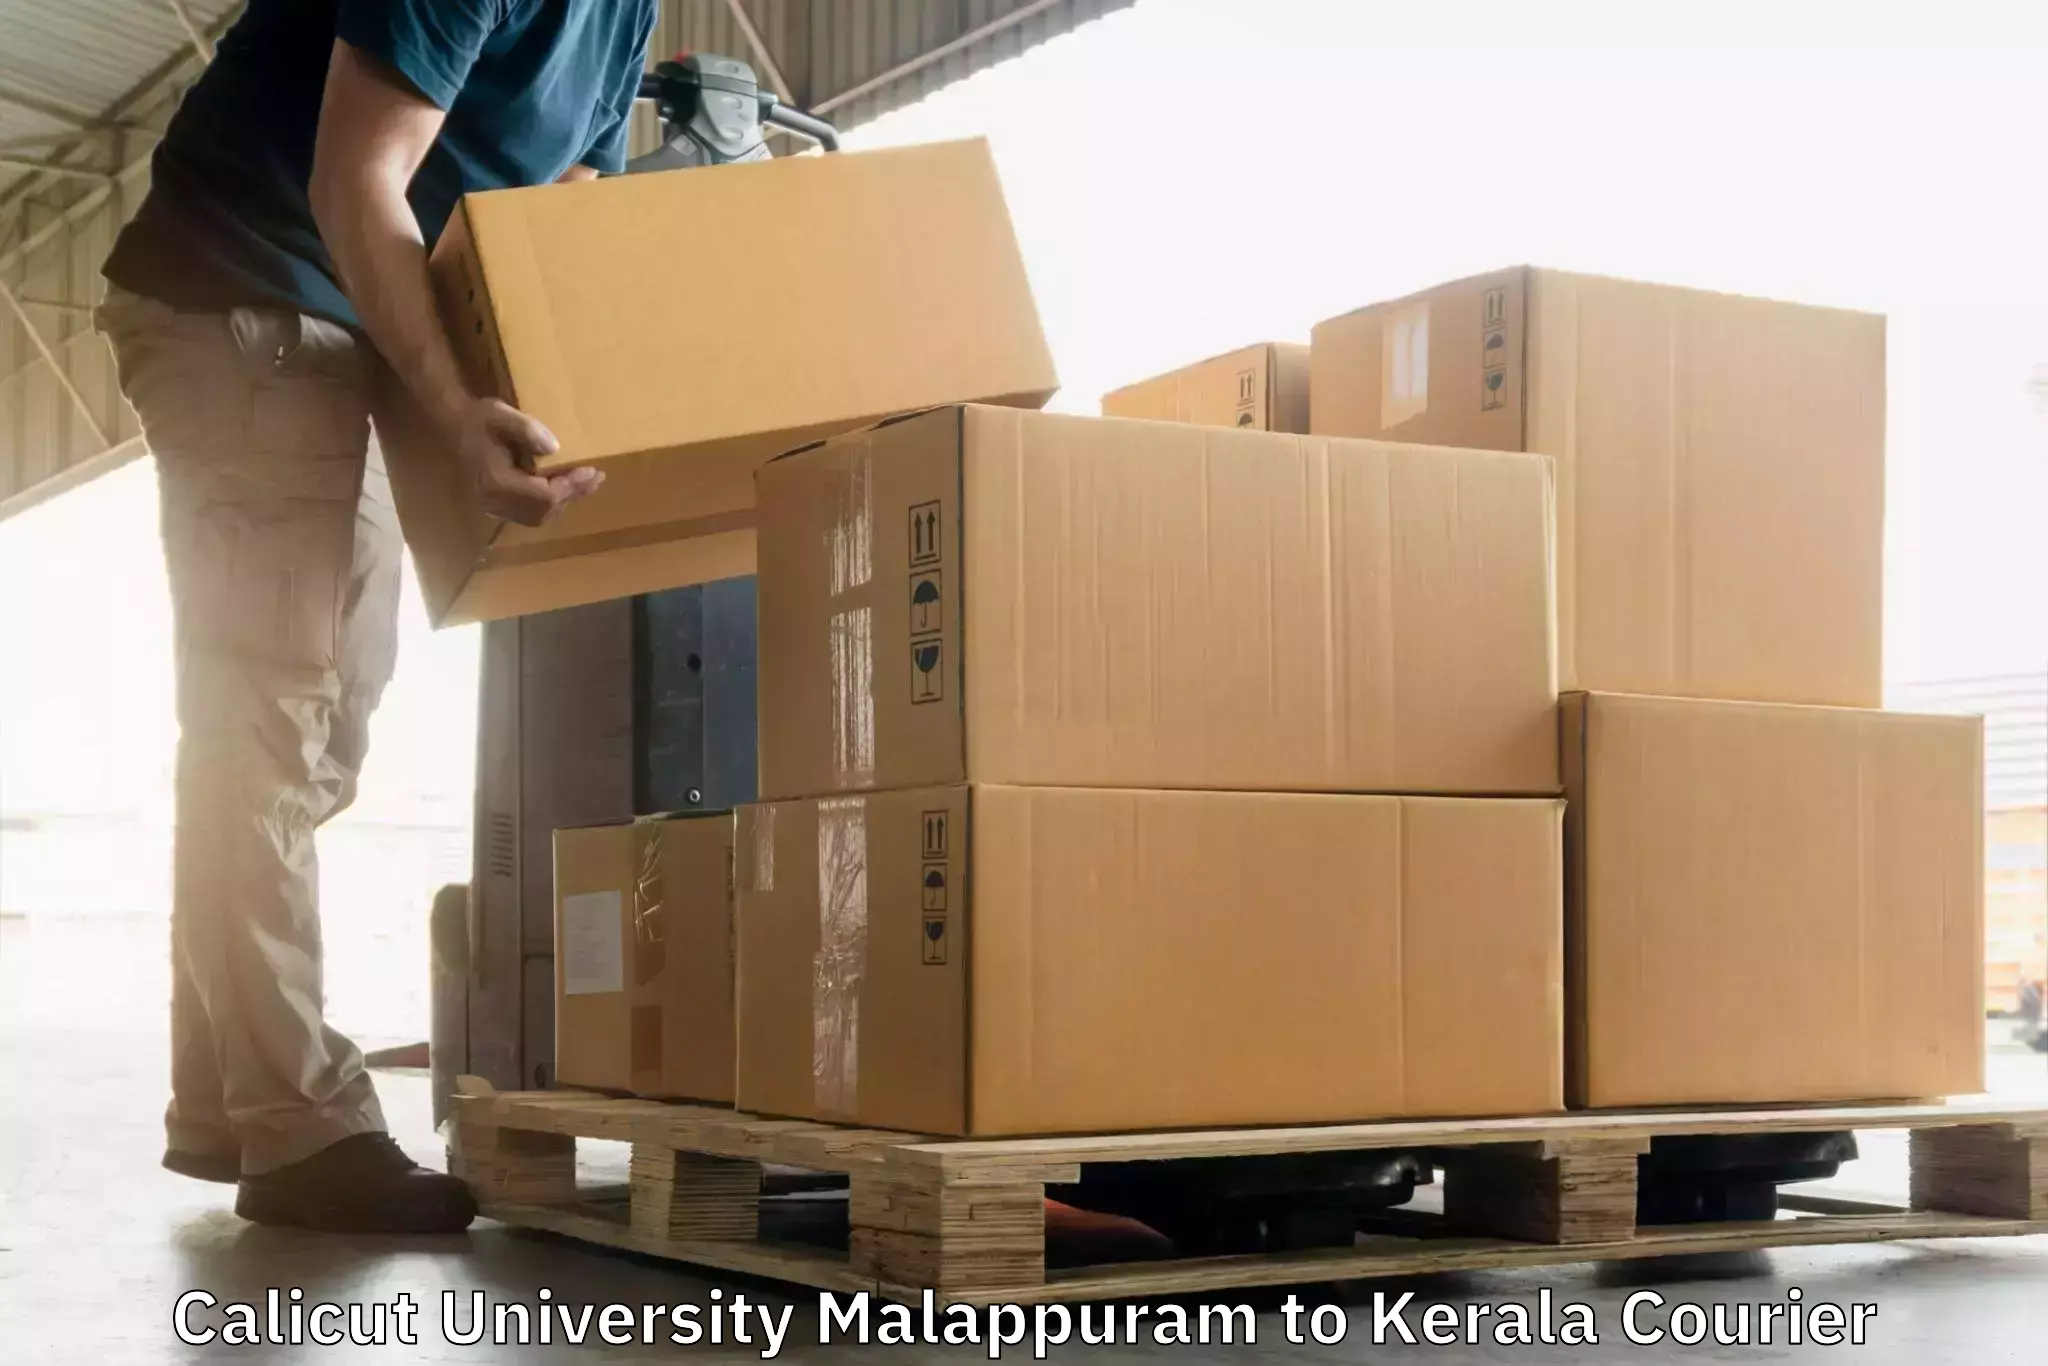 Express mail service Calicut University Malappuram to Kuttikol